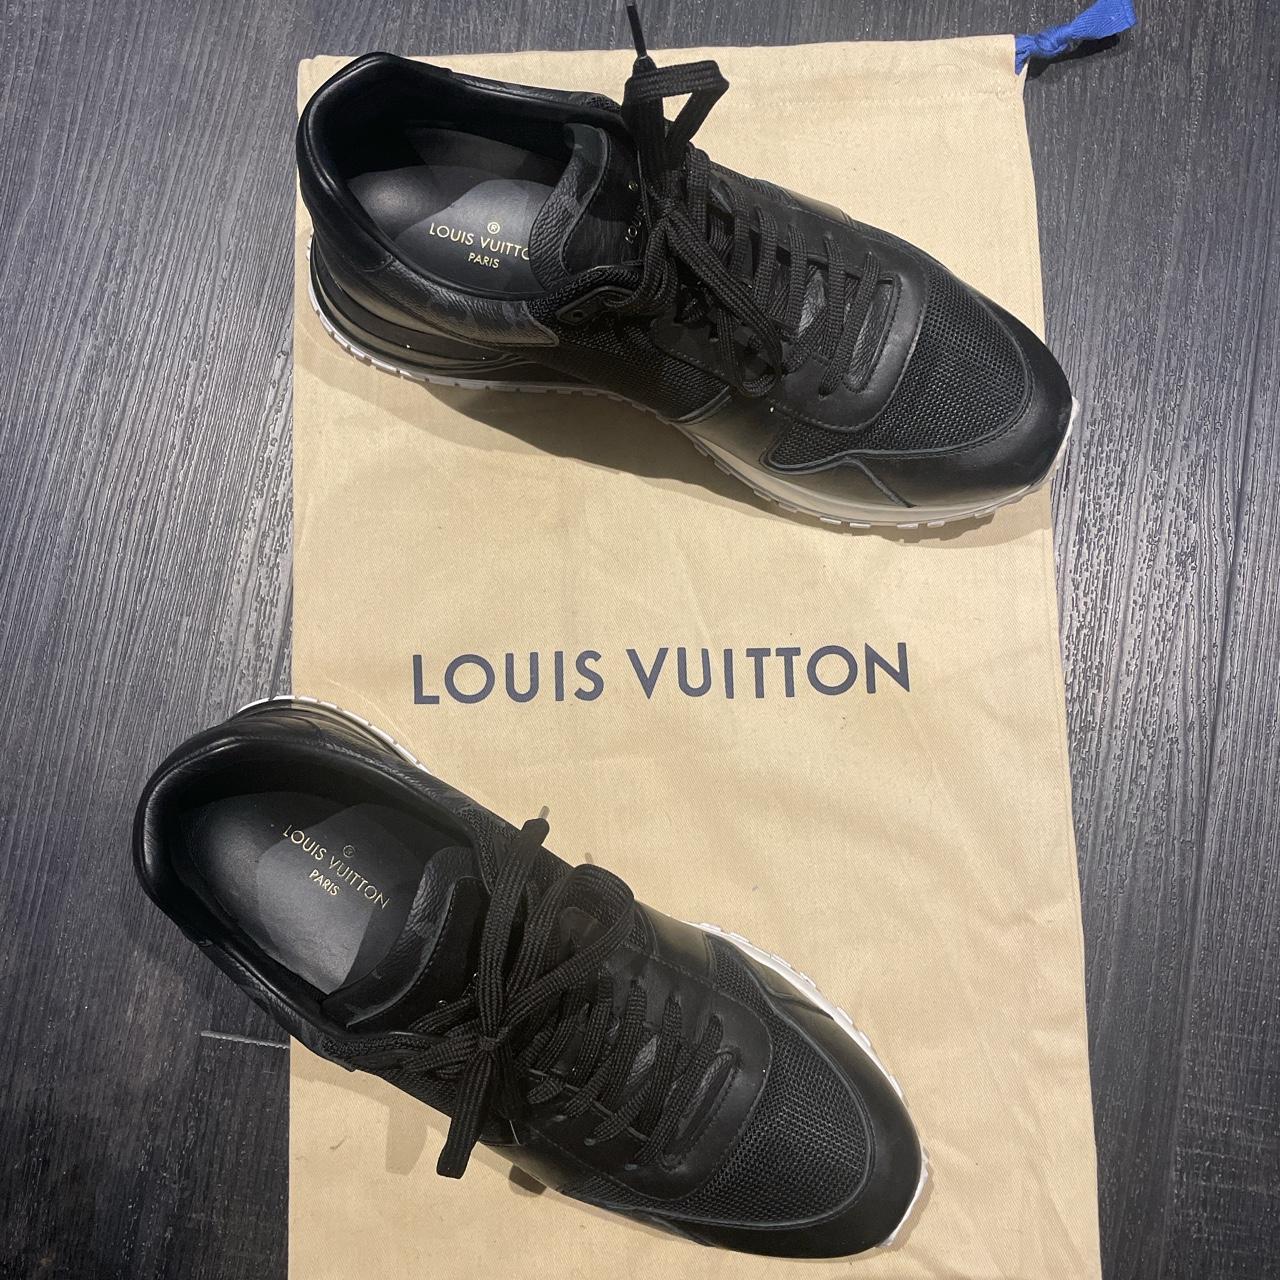 Men's Louis Vuitton denim shoes europe size 9 is - Depop